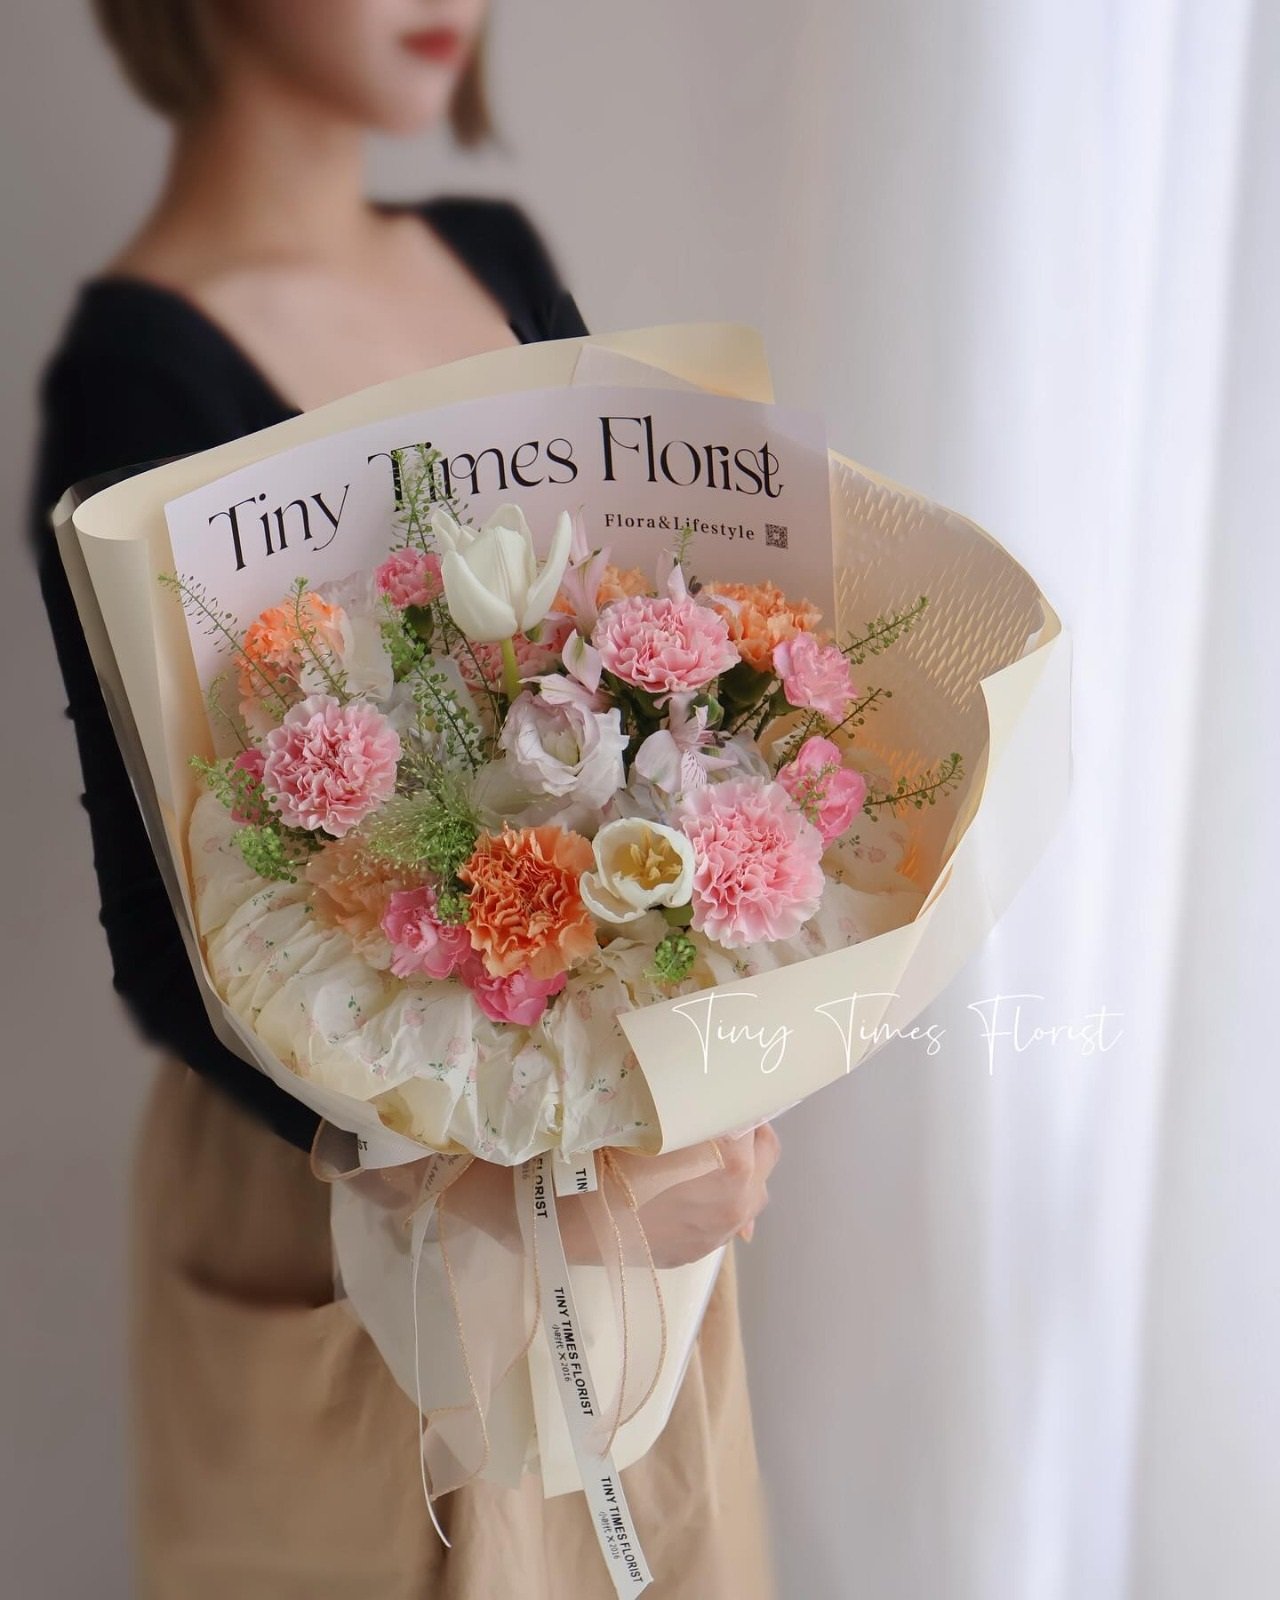 受访商家透露，今年的母亲节花束与去年价格保持一样，没有涨价。图为Tiny Times Florist小时代花店推出的母亲节花束。